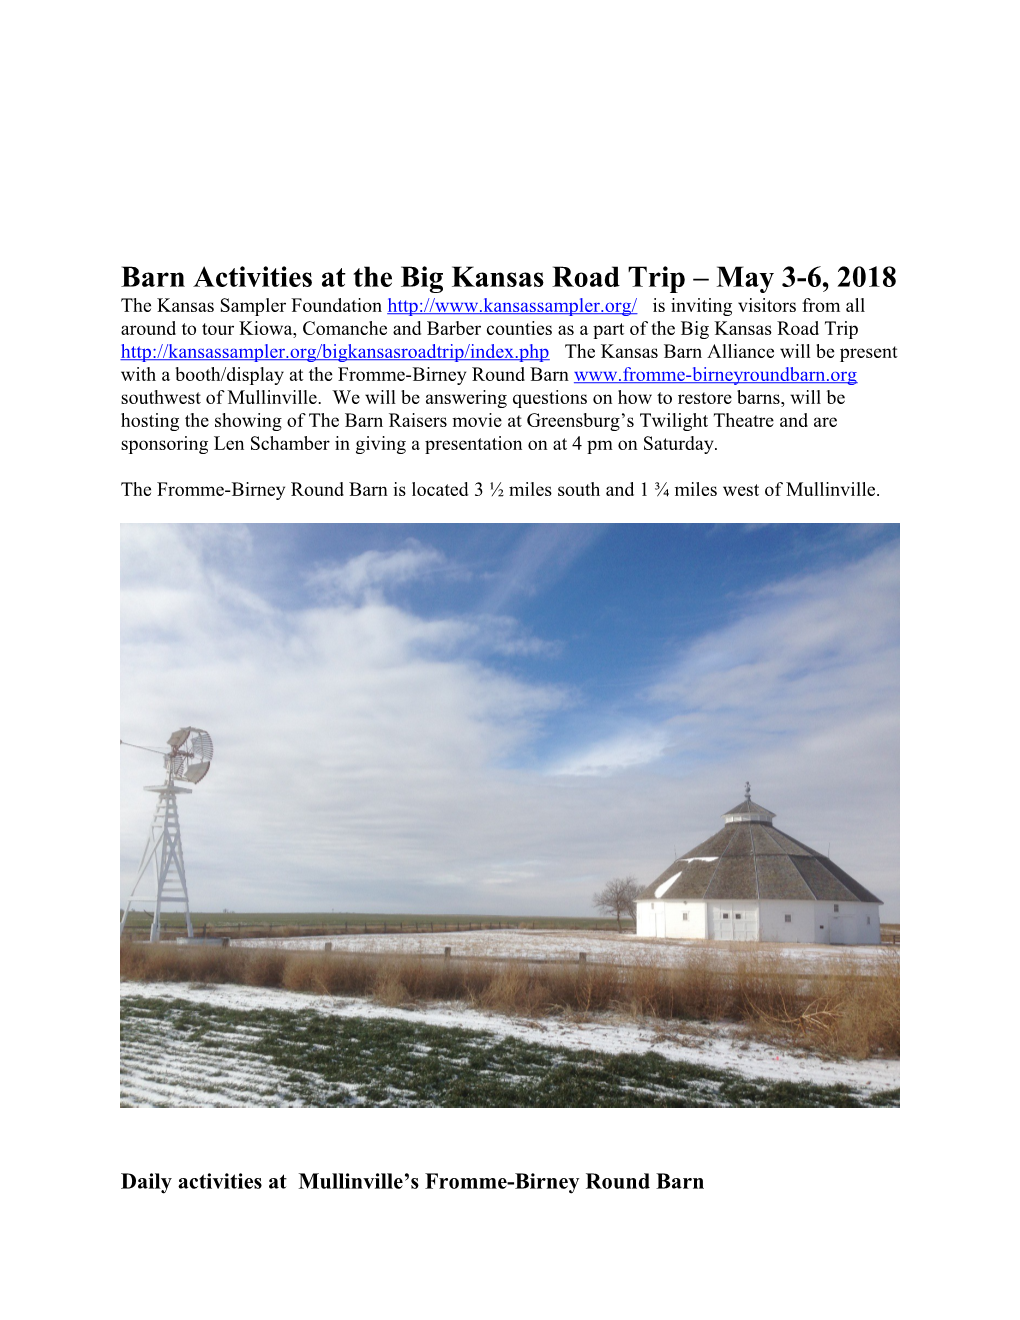 Barn Activities at the Big Kansas Road Trip May 3-6, 2018